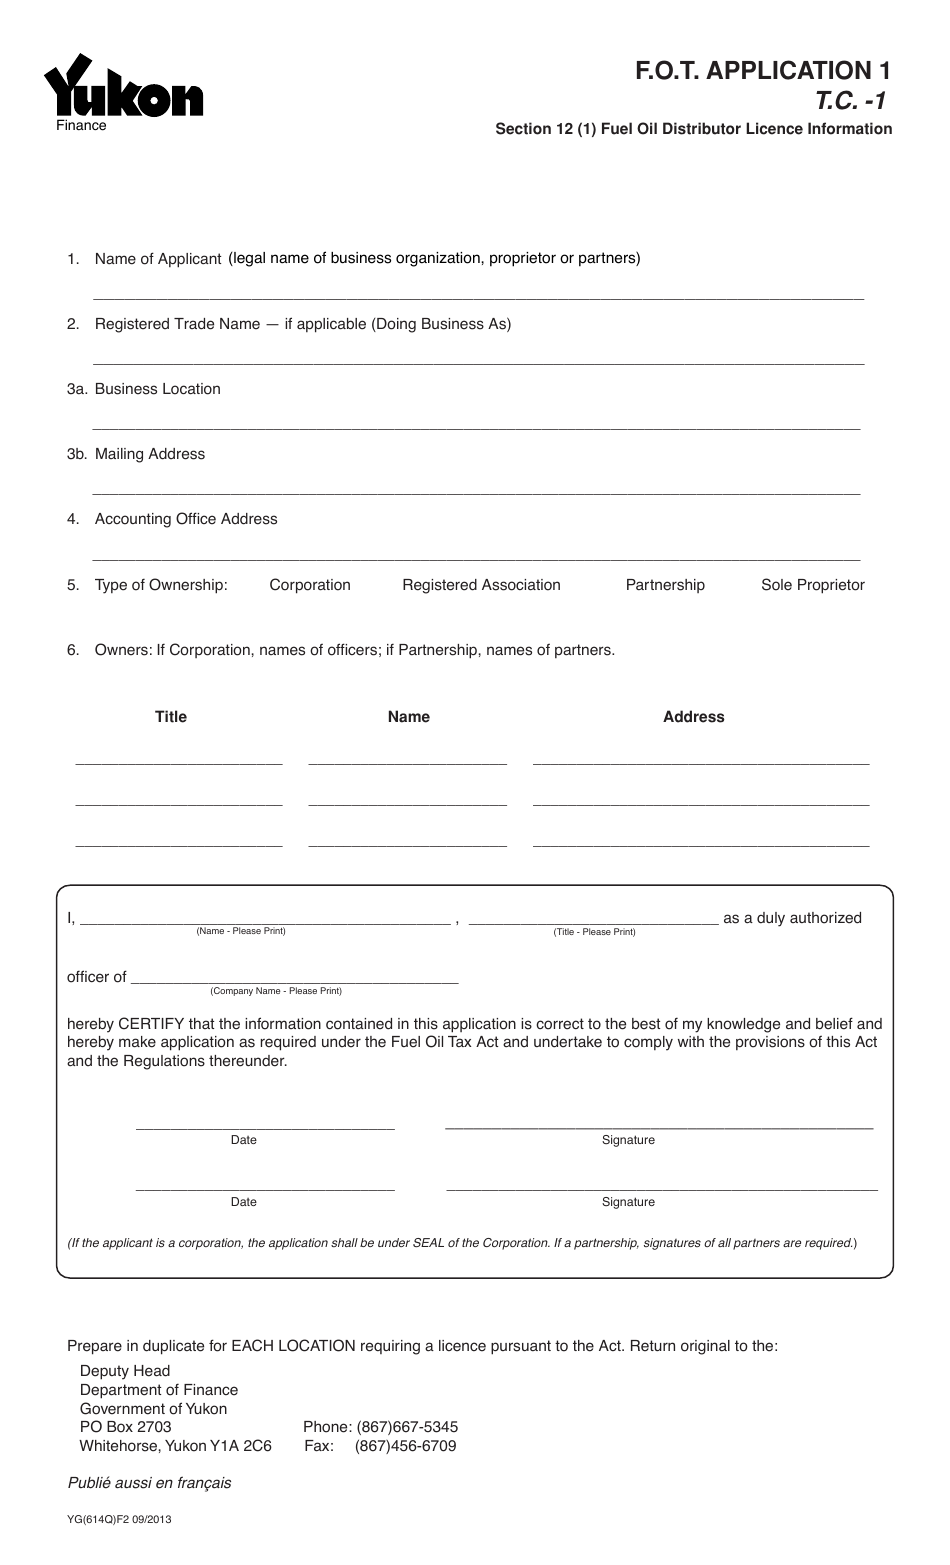 Form YG614 Fuel Oil Tax - Application 1 - Yukon, Canada, Page 1